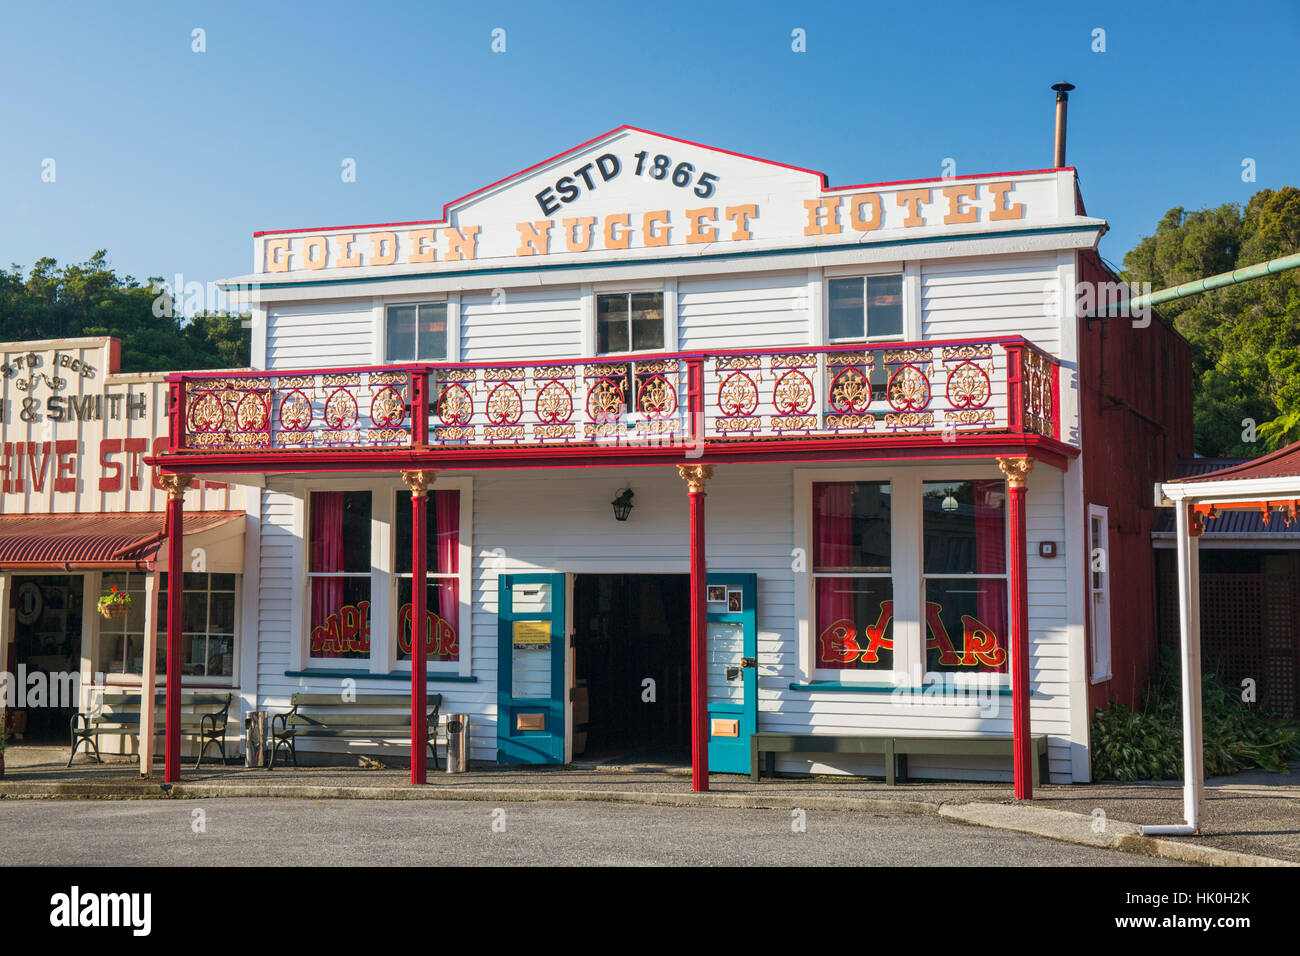 Edificio histórico que evoca la costa oeste del pasado minero de oro, barriada, Greymouth, distrito de gris, Costa oeste, Nueva Zelanda Foto de stock